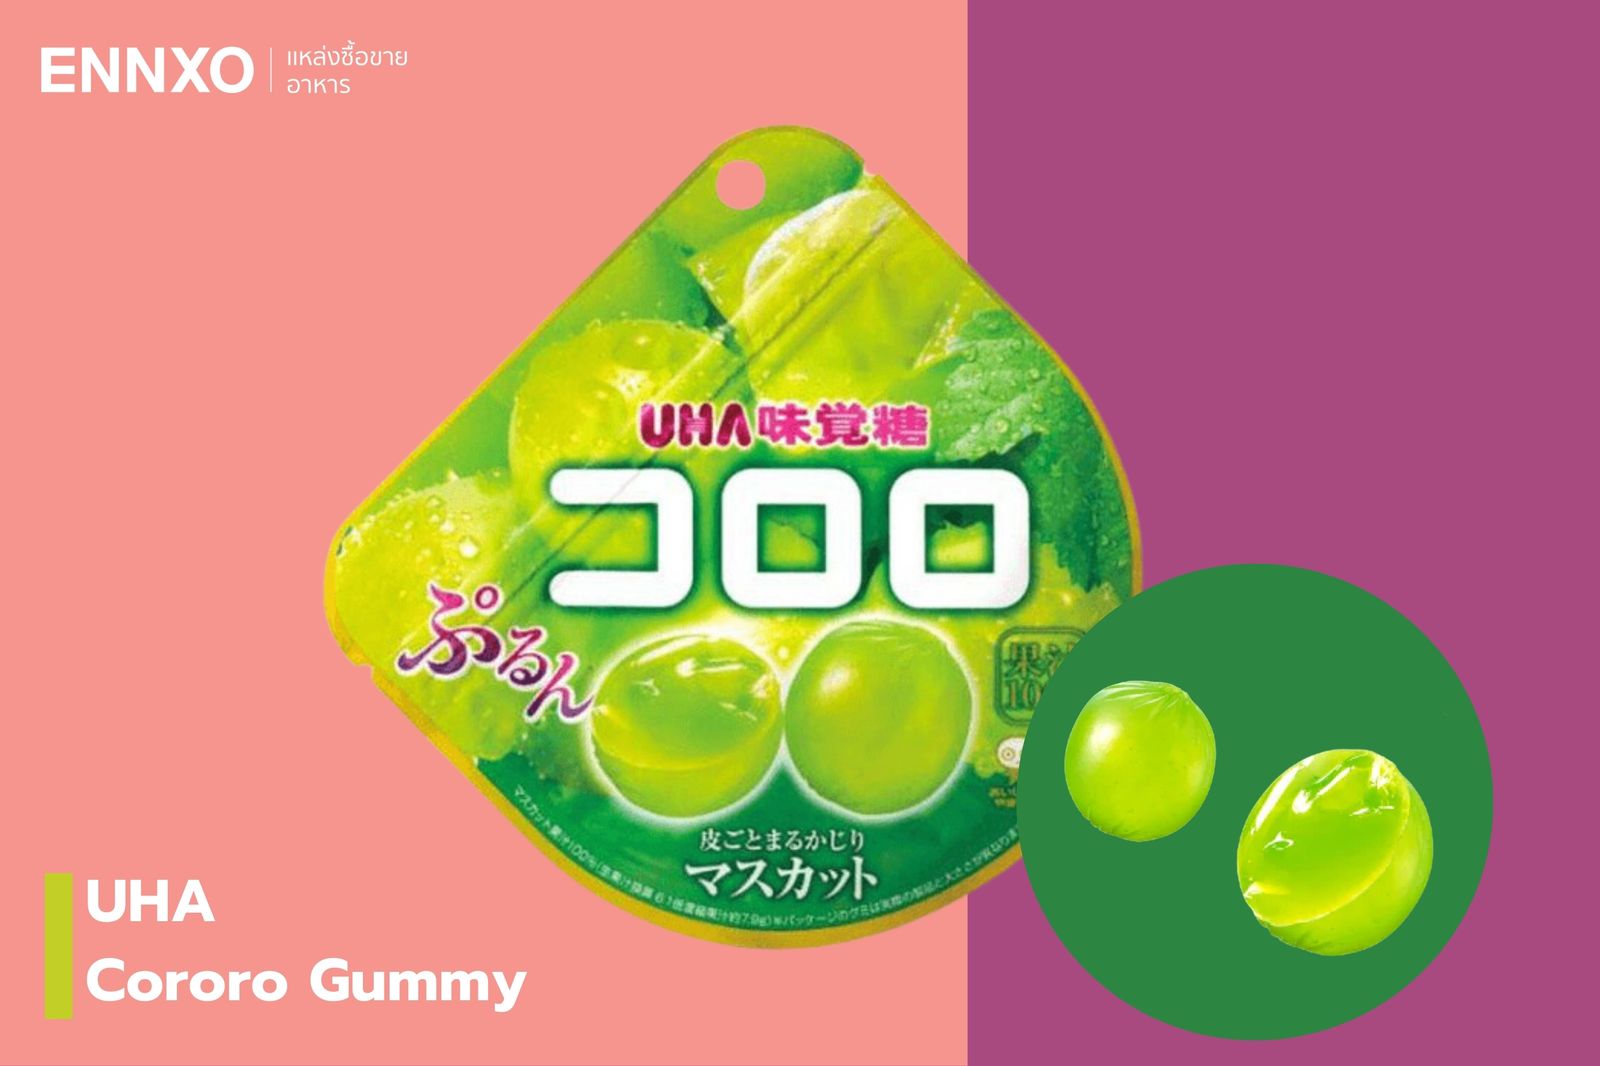 UHA Cororo Gummy เยลลี่ผลไม้เข้มข้นจากญี่ปุ่น